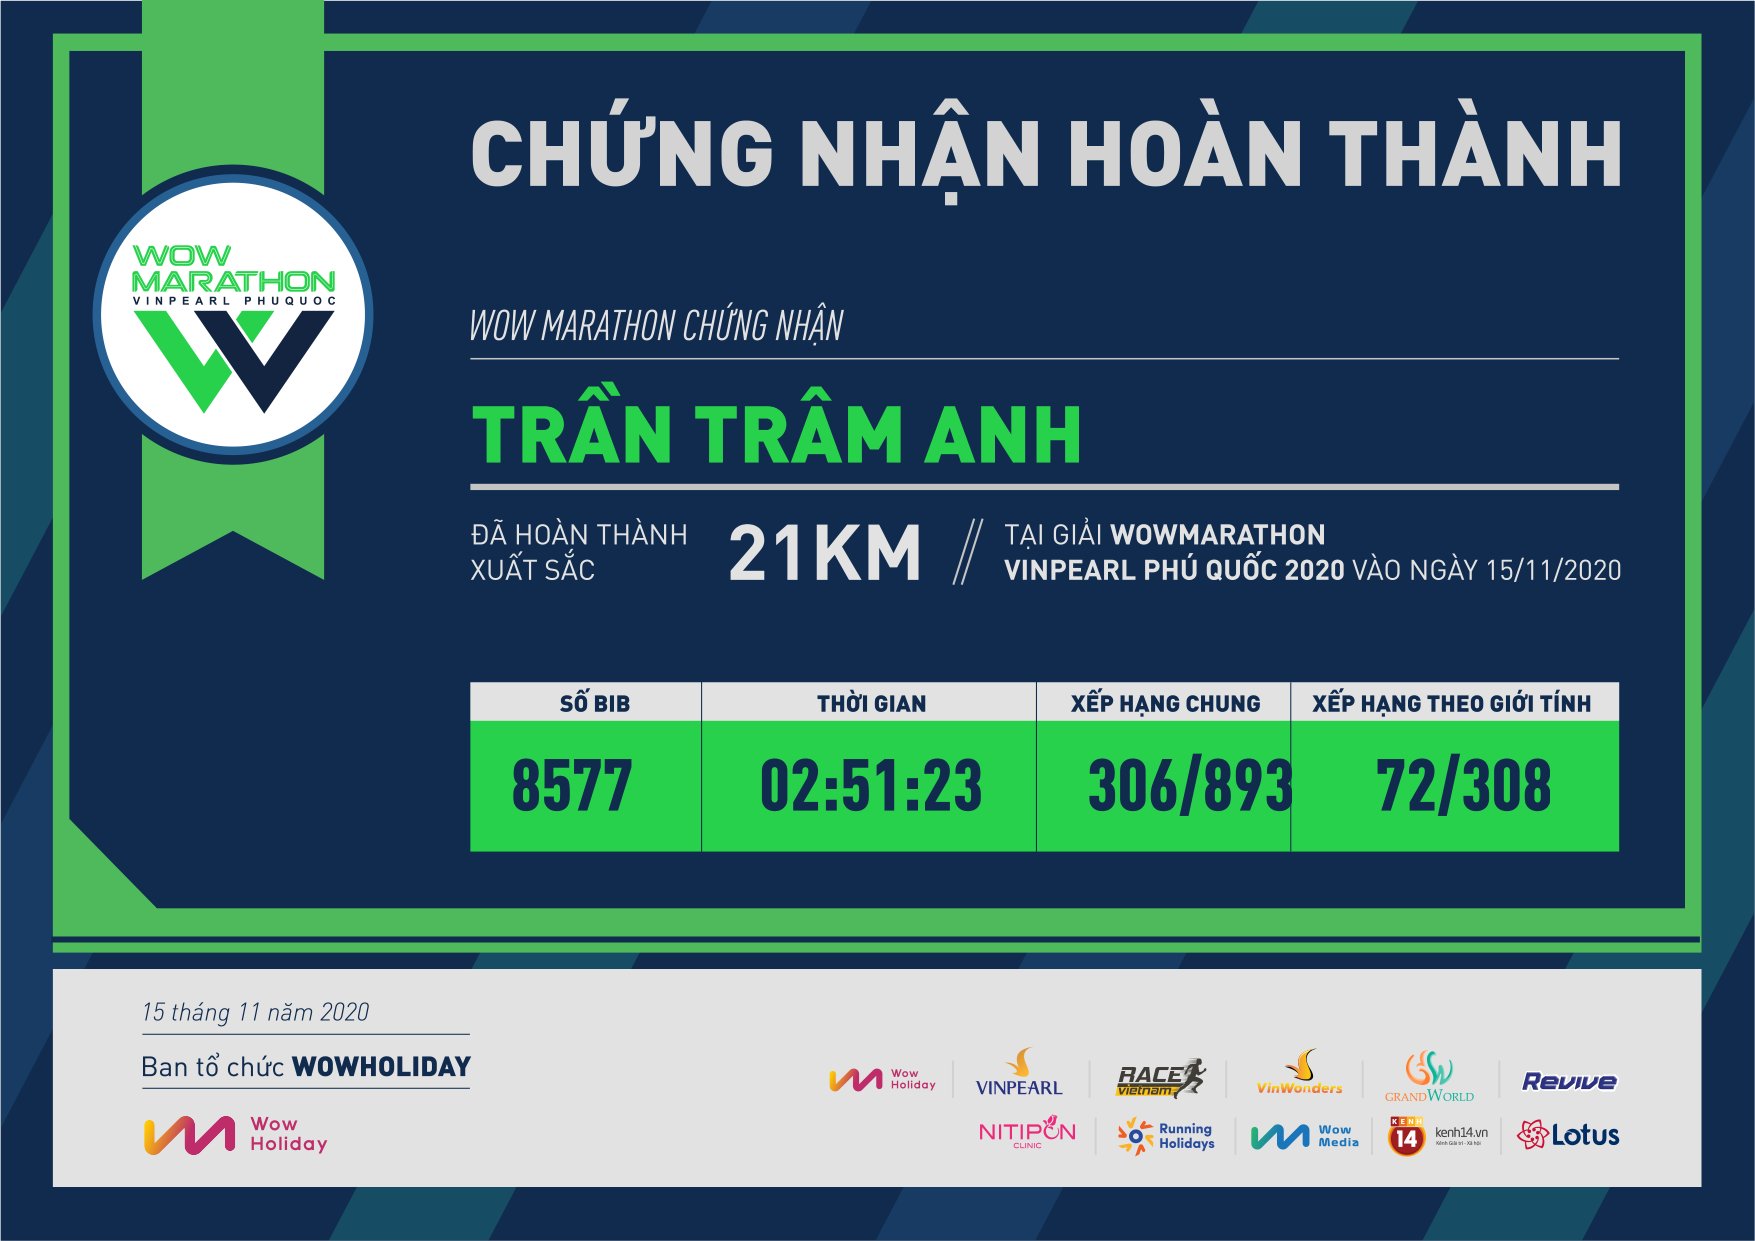 8577 - Trần Trâm Anh